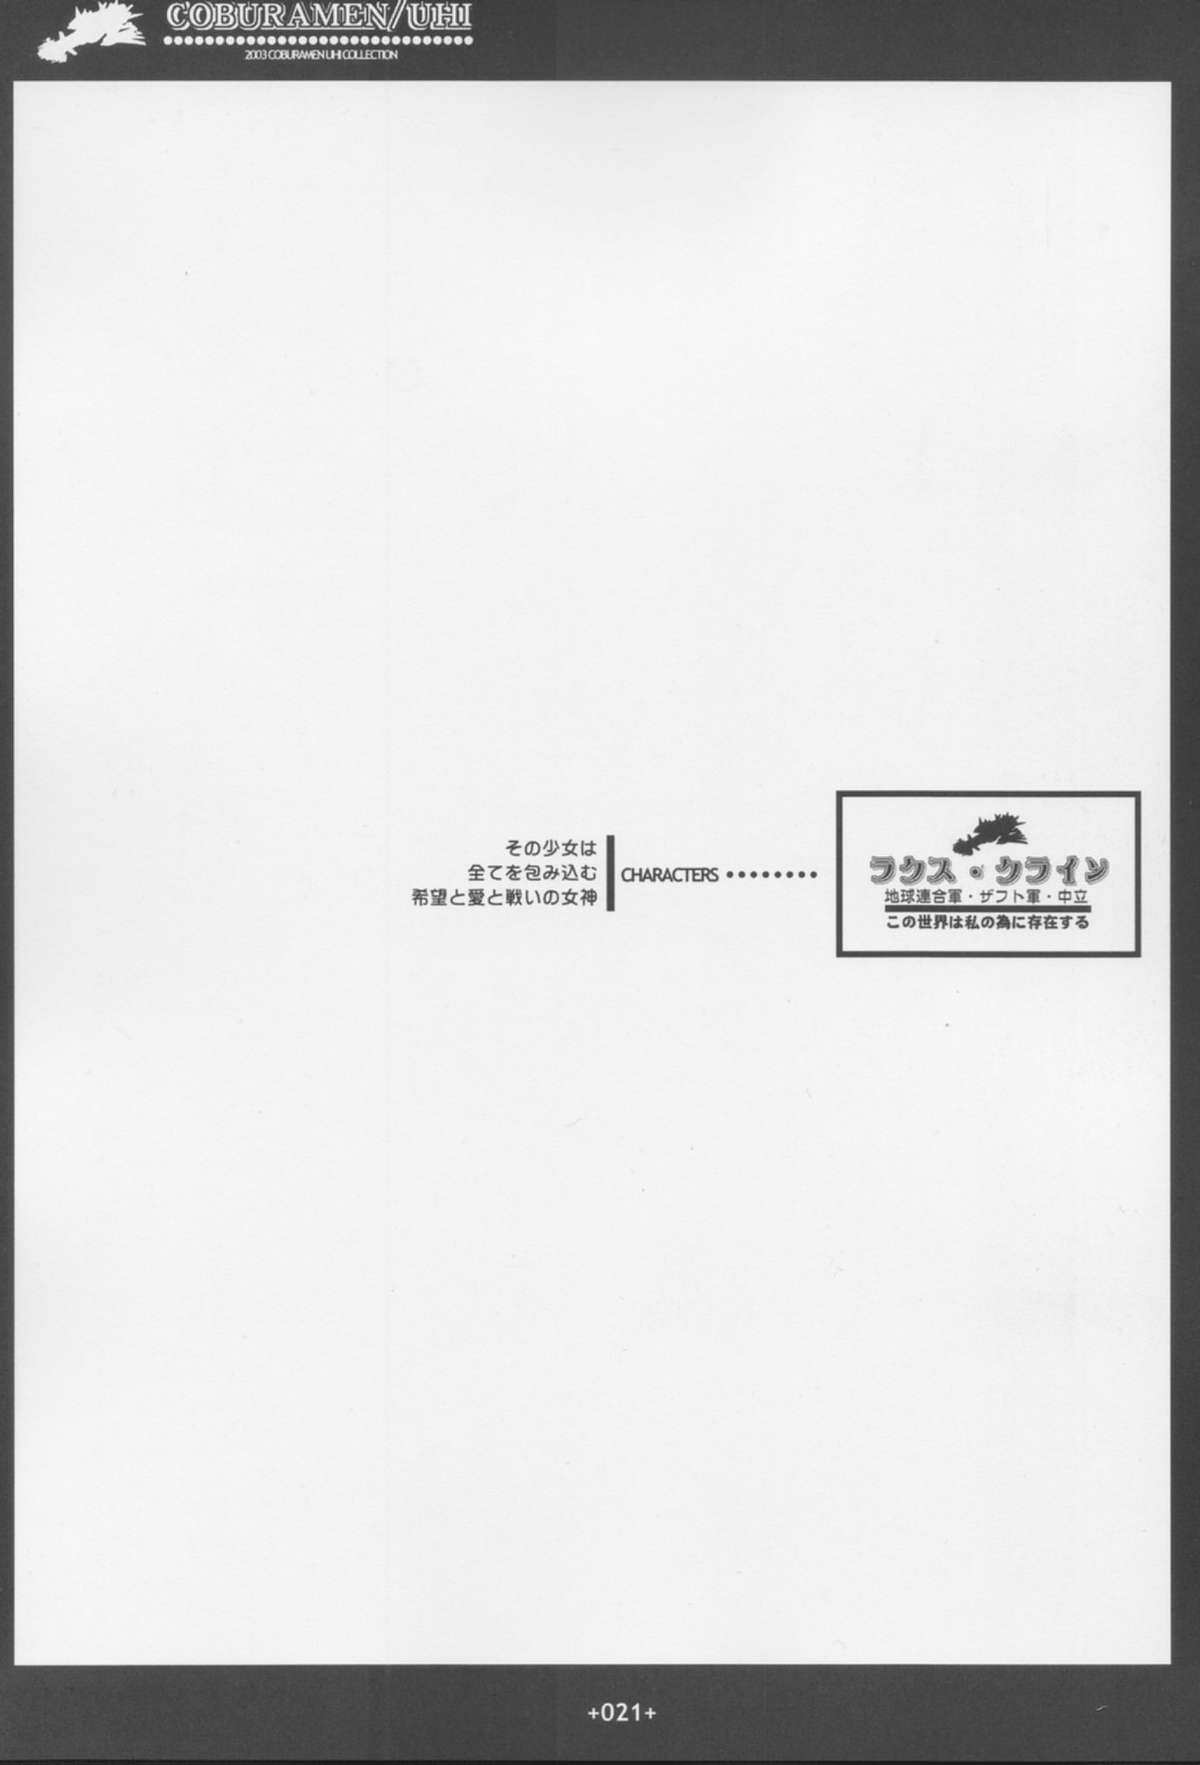 [Coburamenman (Uhhii)] GS (Gundam Seed) page 22 full